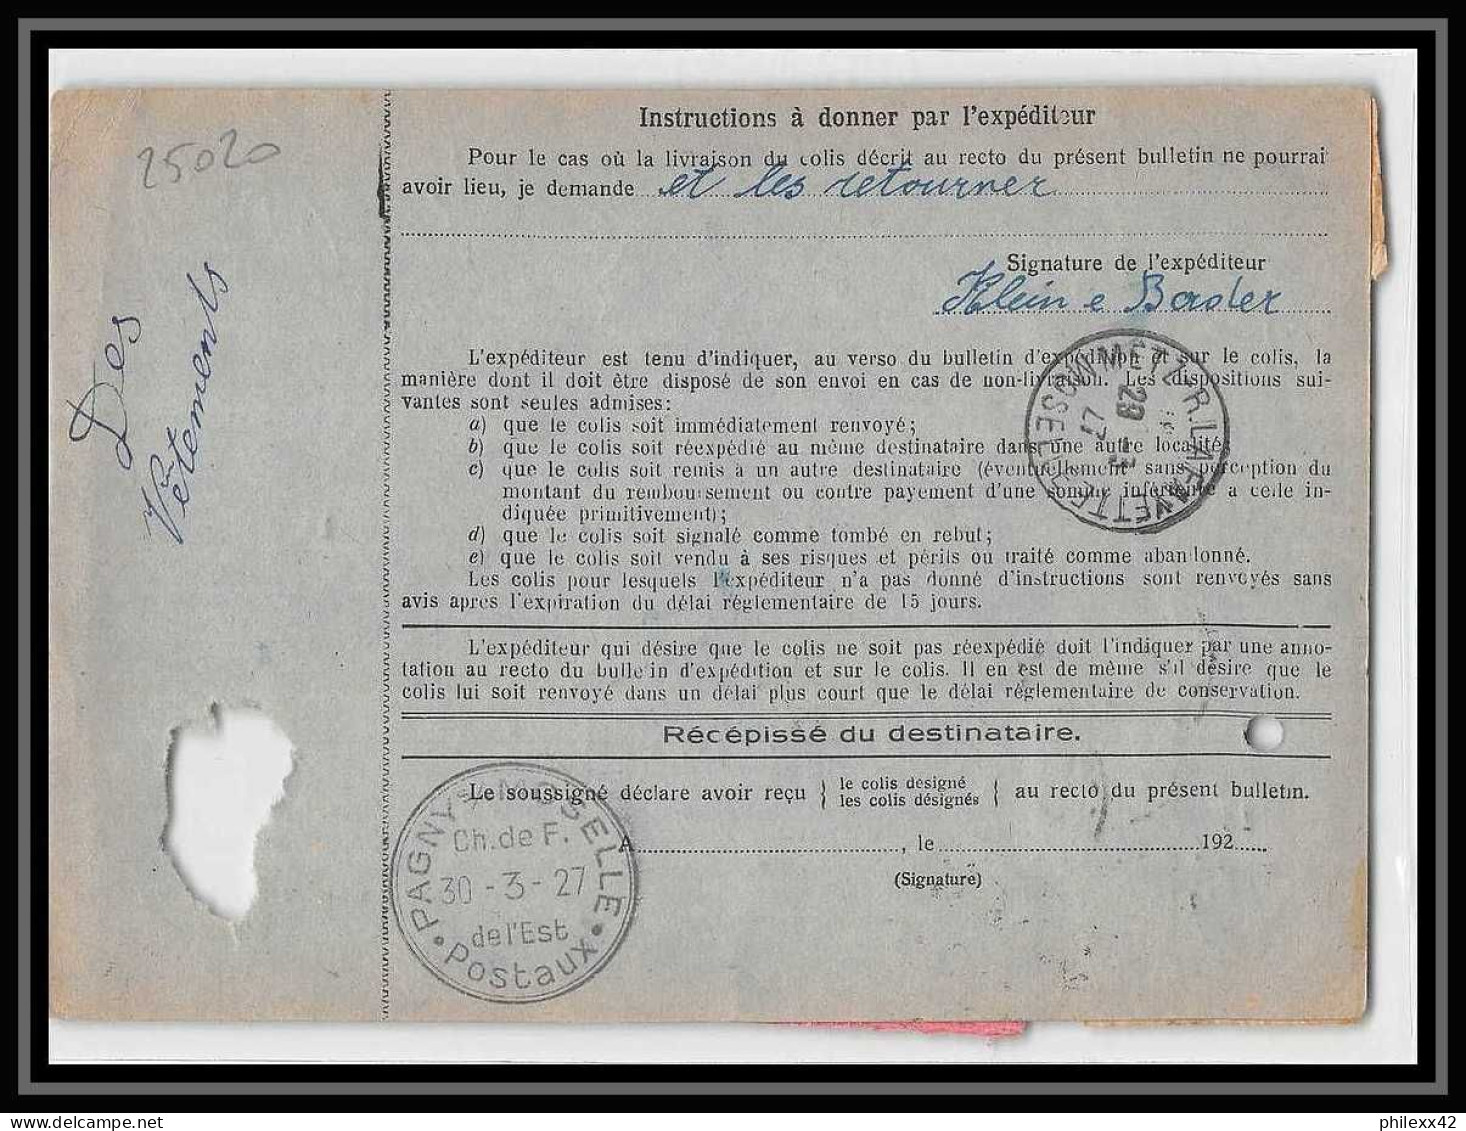 25020 Bulletin D'expédition France Colis Postaux Fiscal Haut Rhin 1927 Guebwiller Semeuse Merson 123 Valeur Déclarée - Storia Postale